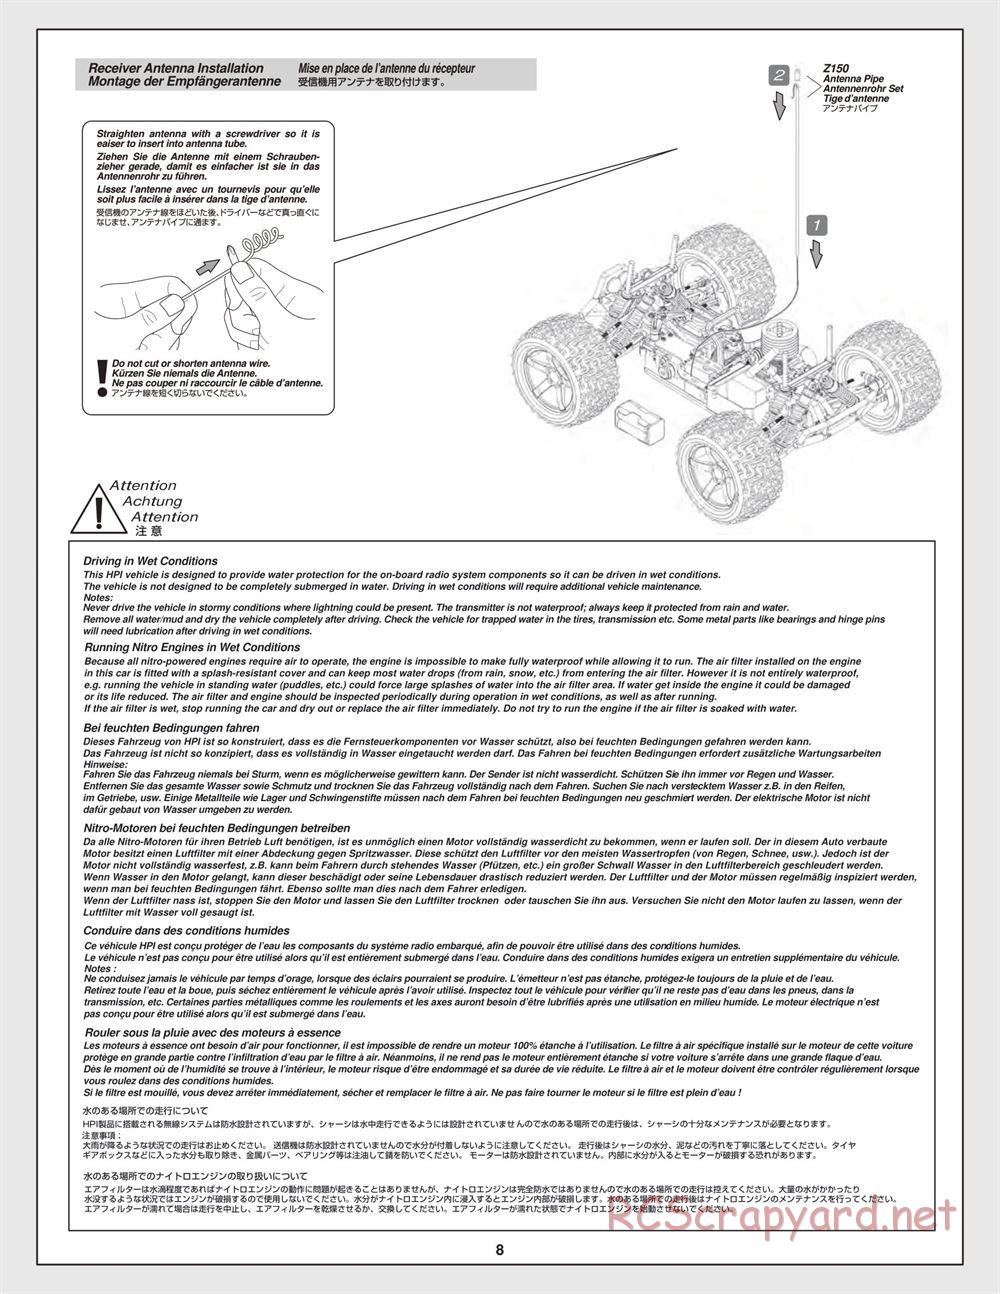 HPI - Bullet ST 3.0 - Manual - Page 8